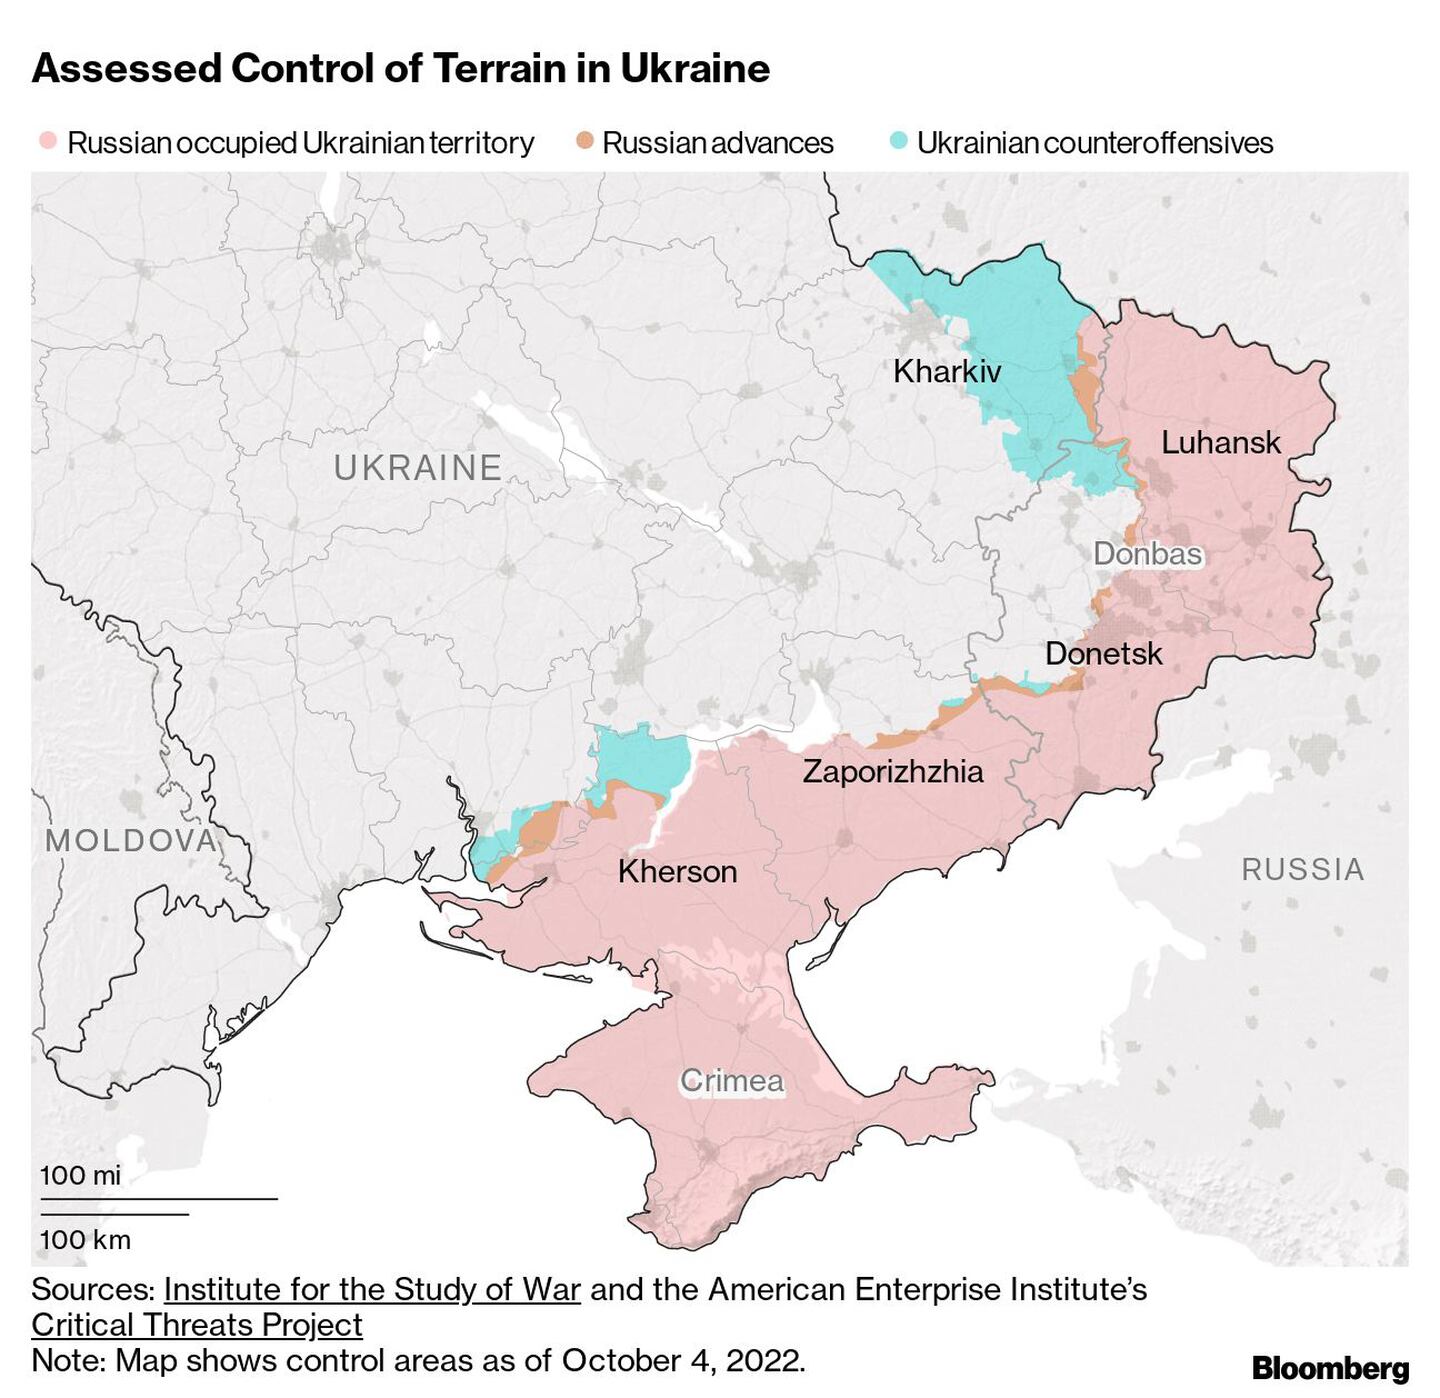 En rosa: Territorio ucraniano ocupado por Rusia
En naranja: Avances rusos
En celeste: contraofensivas ucranianasdfd